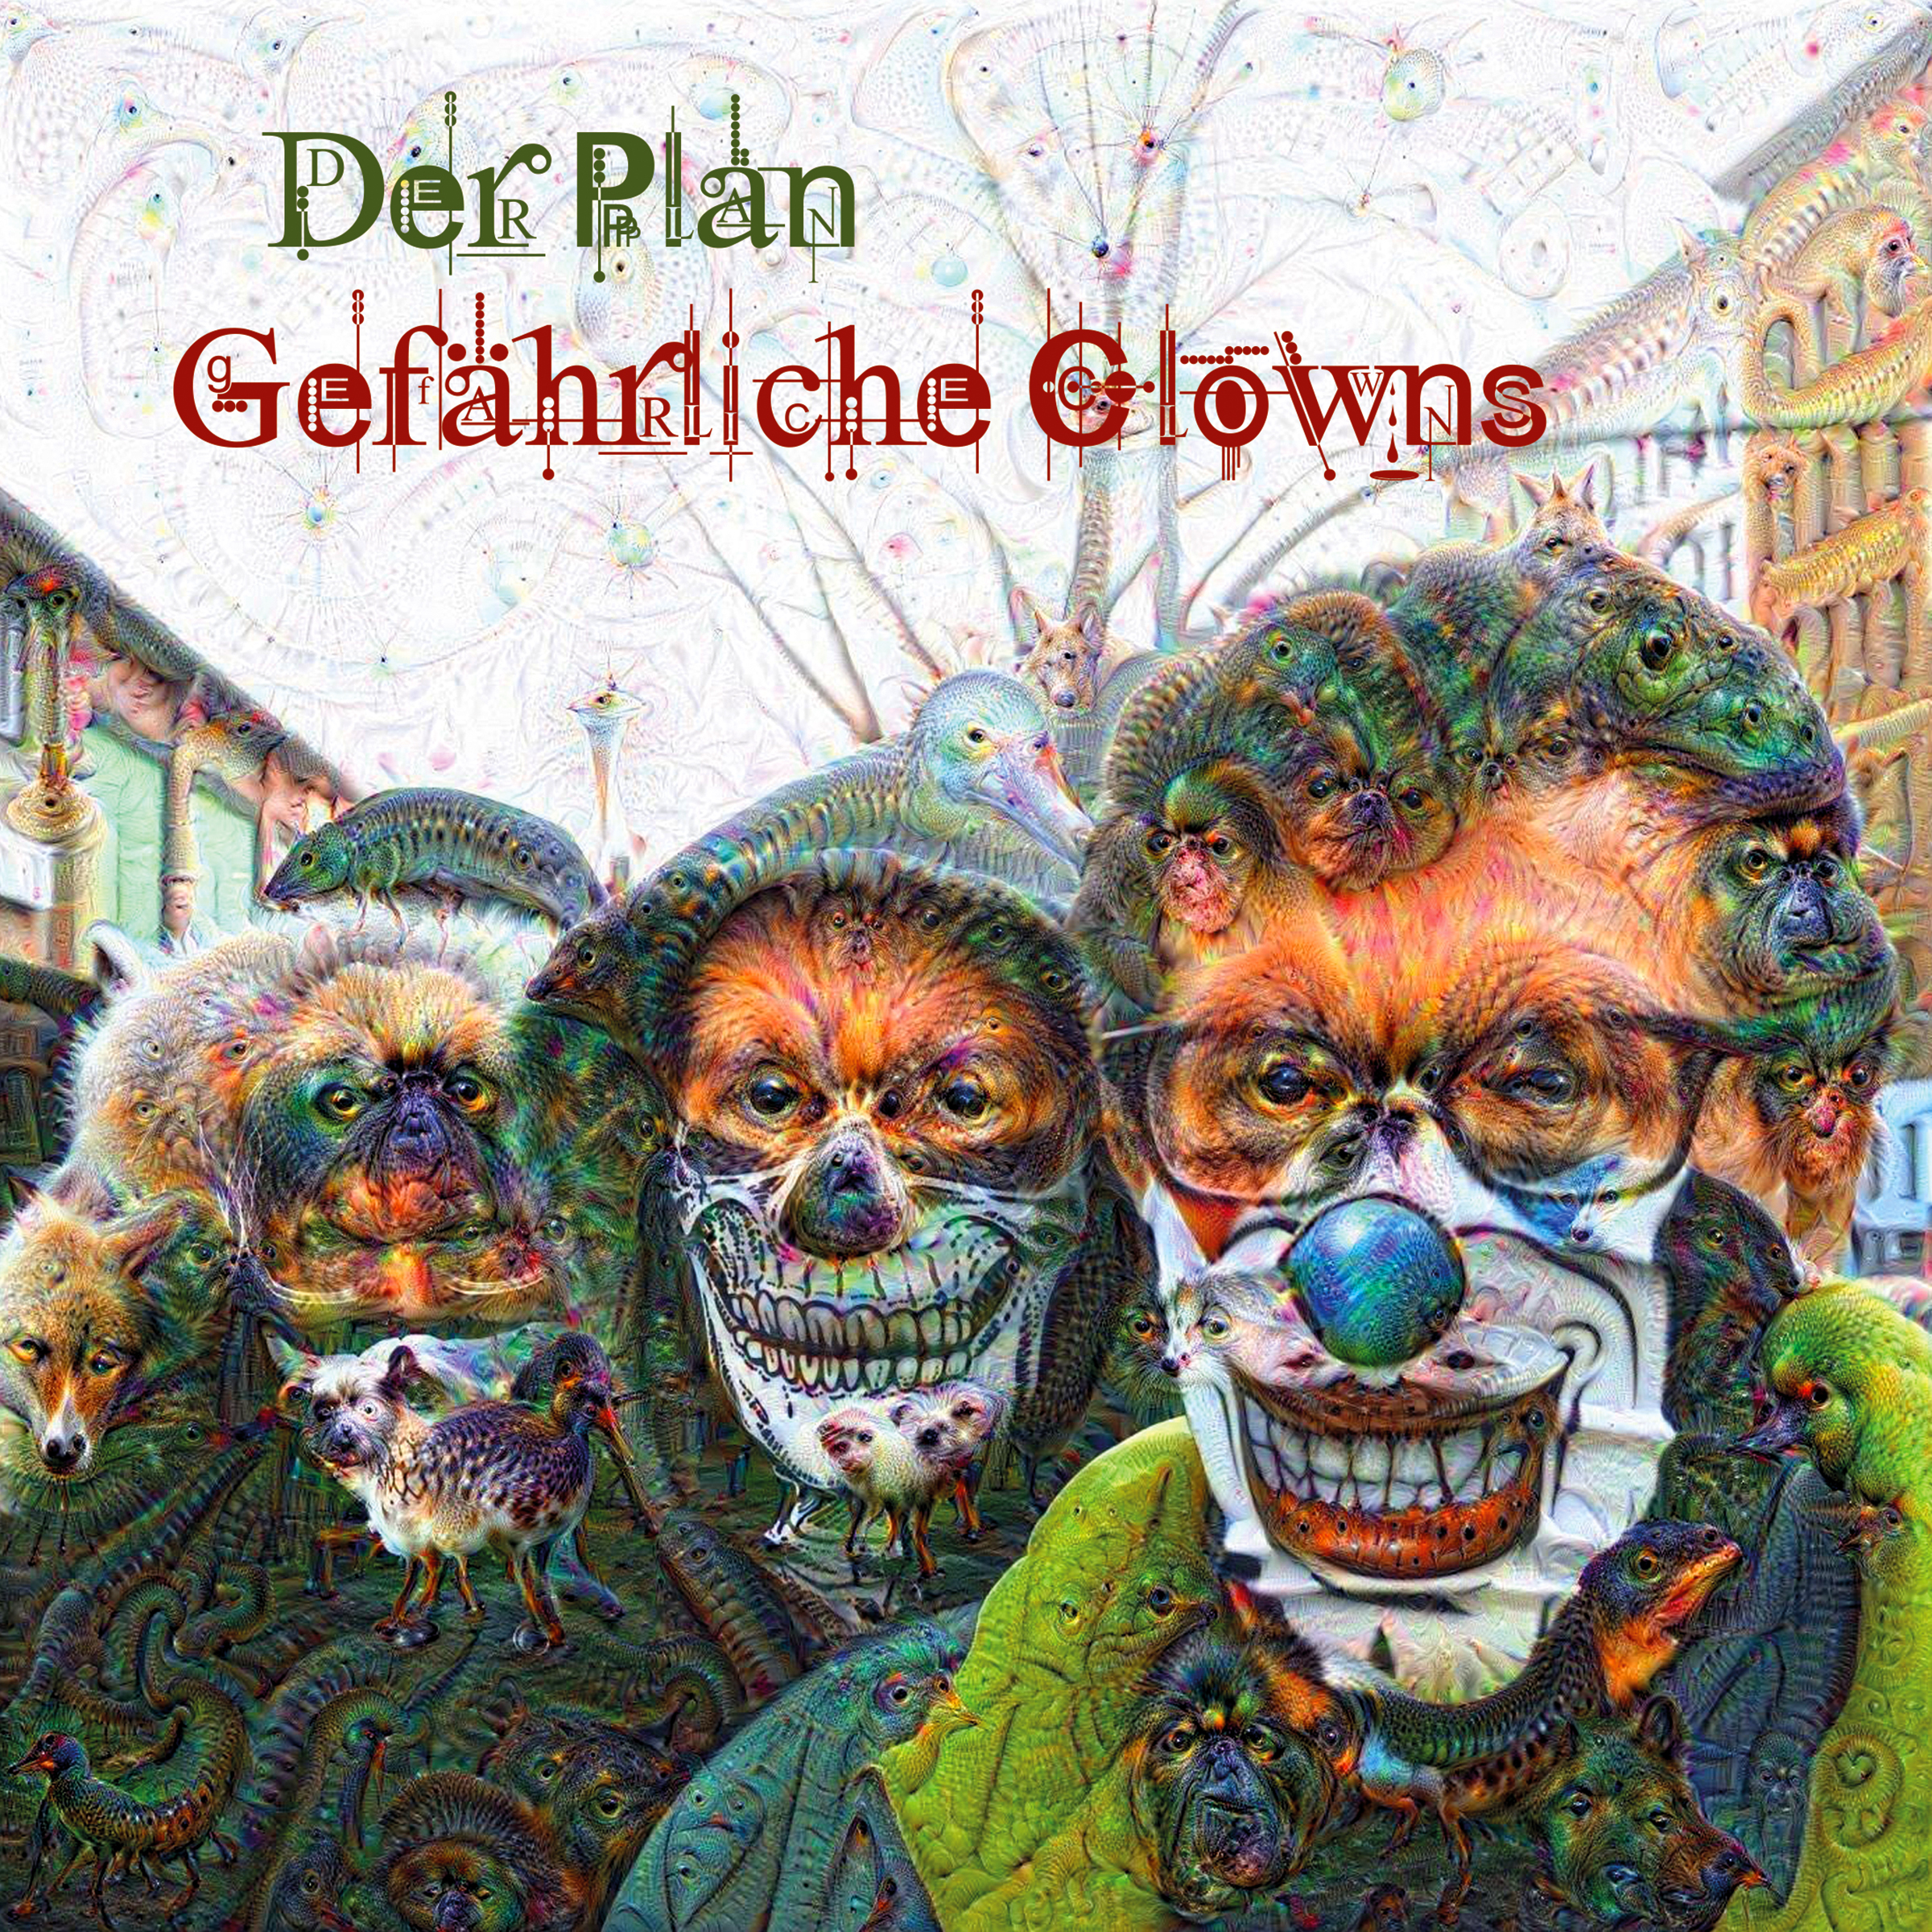 Der Plan - Gefährliche Clowns 7"